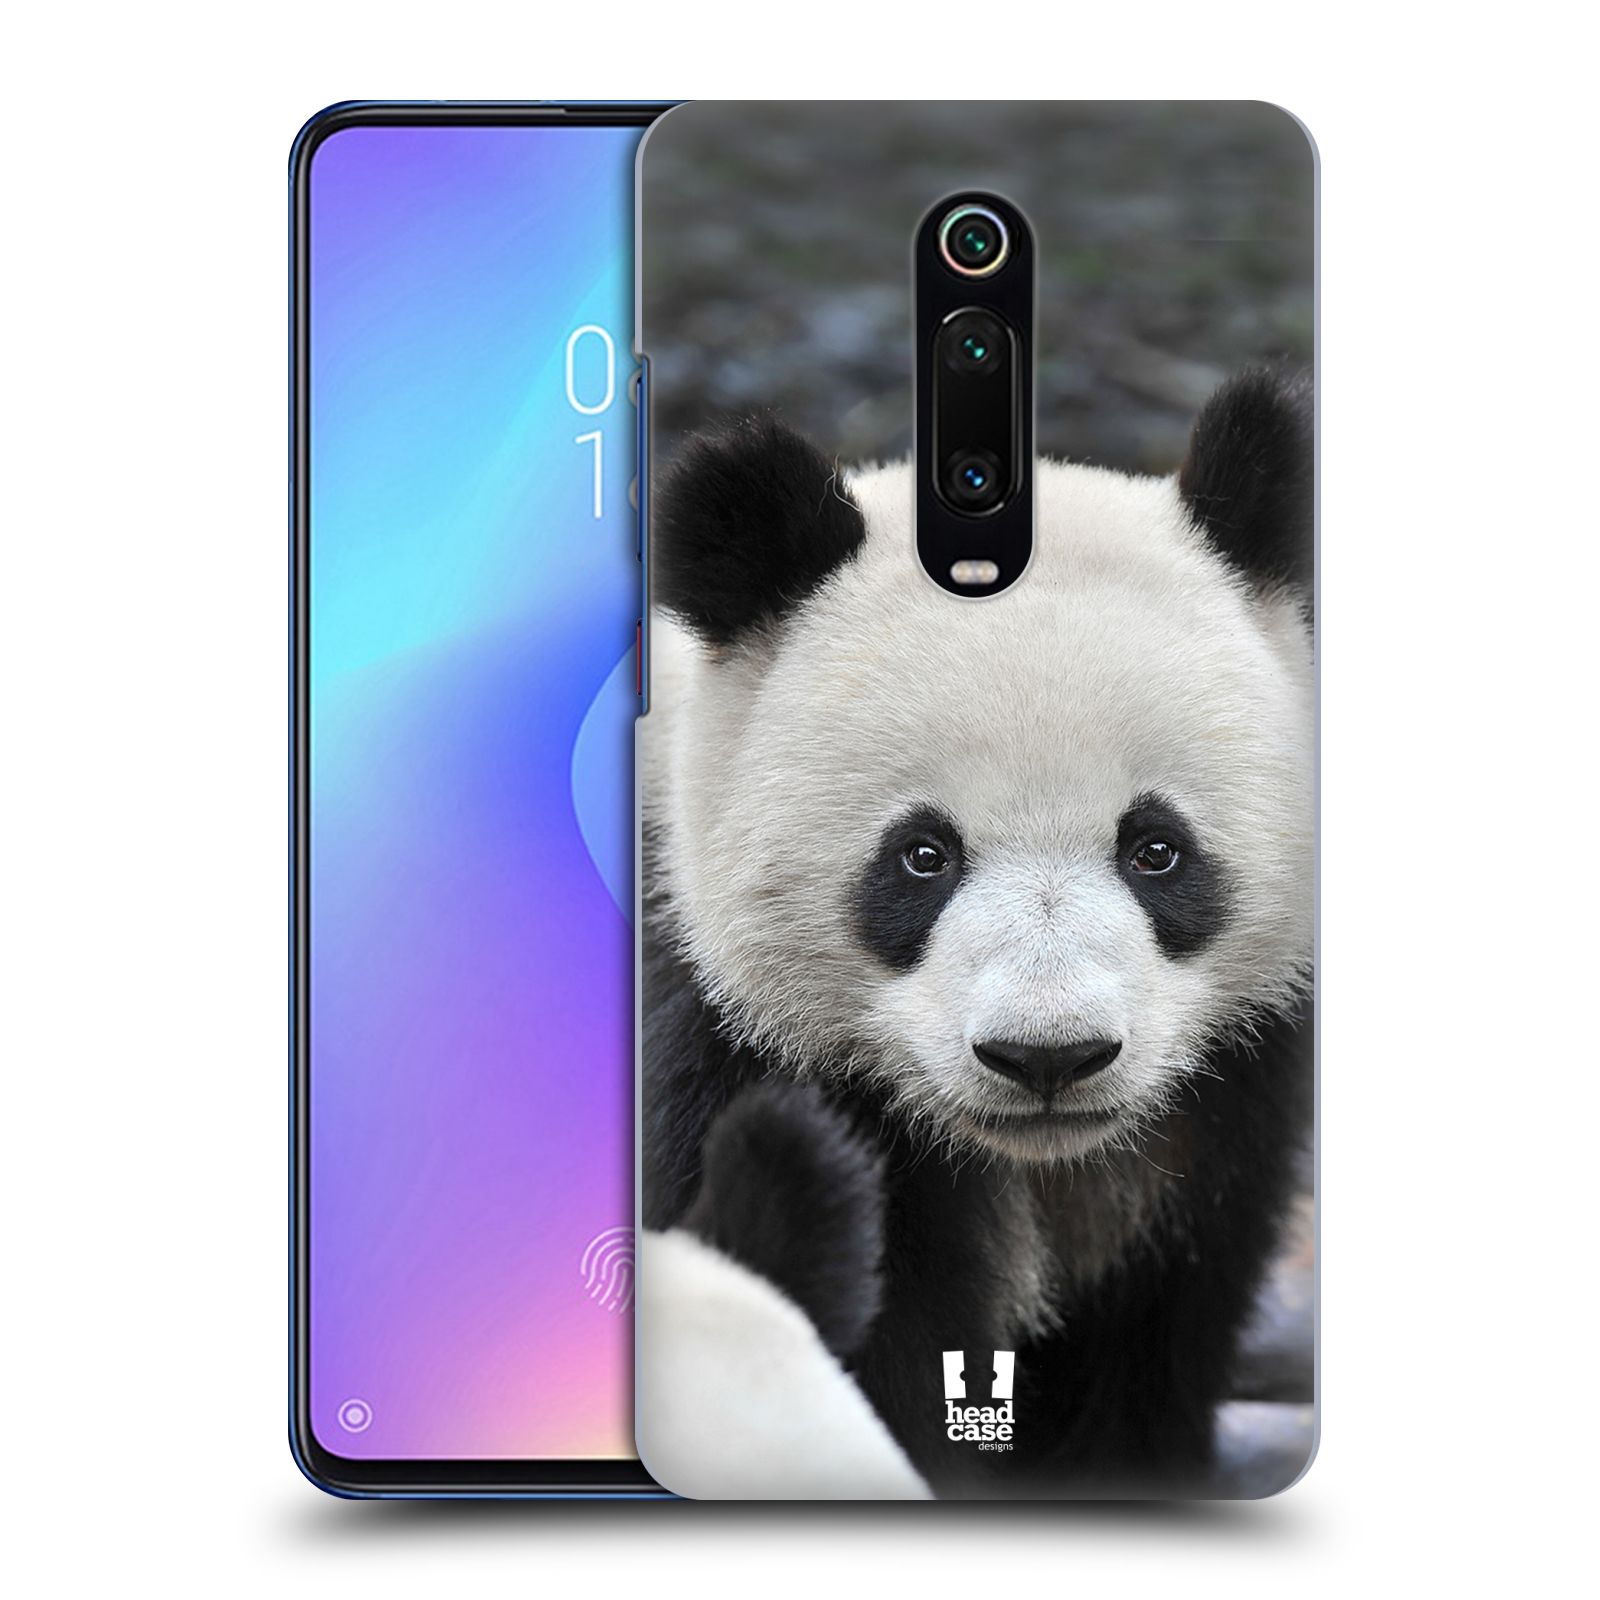 Zadní obal pro mobil Xiaomi Mi 9T / Mi 9T Pro - HEAD CASE - Svět zvířat medvěd panda